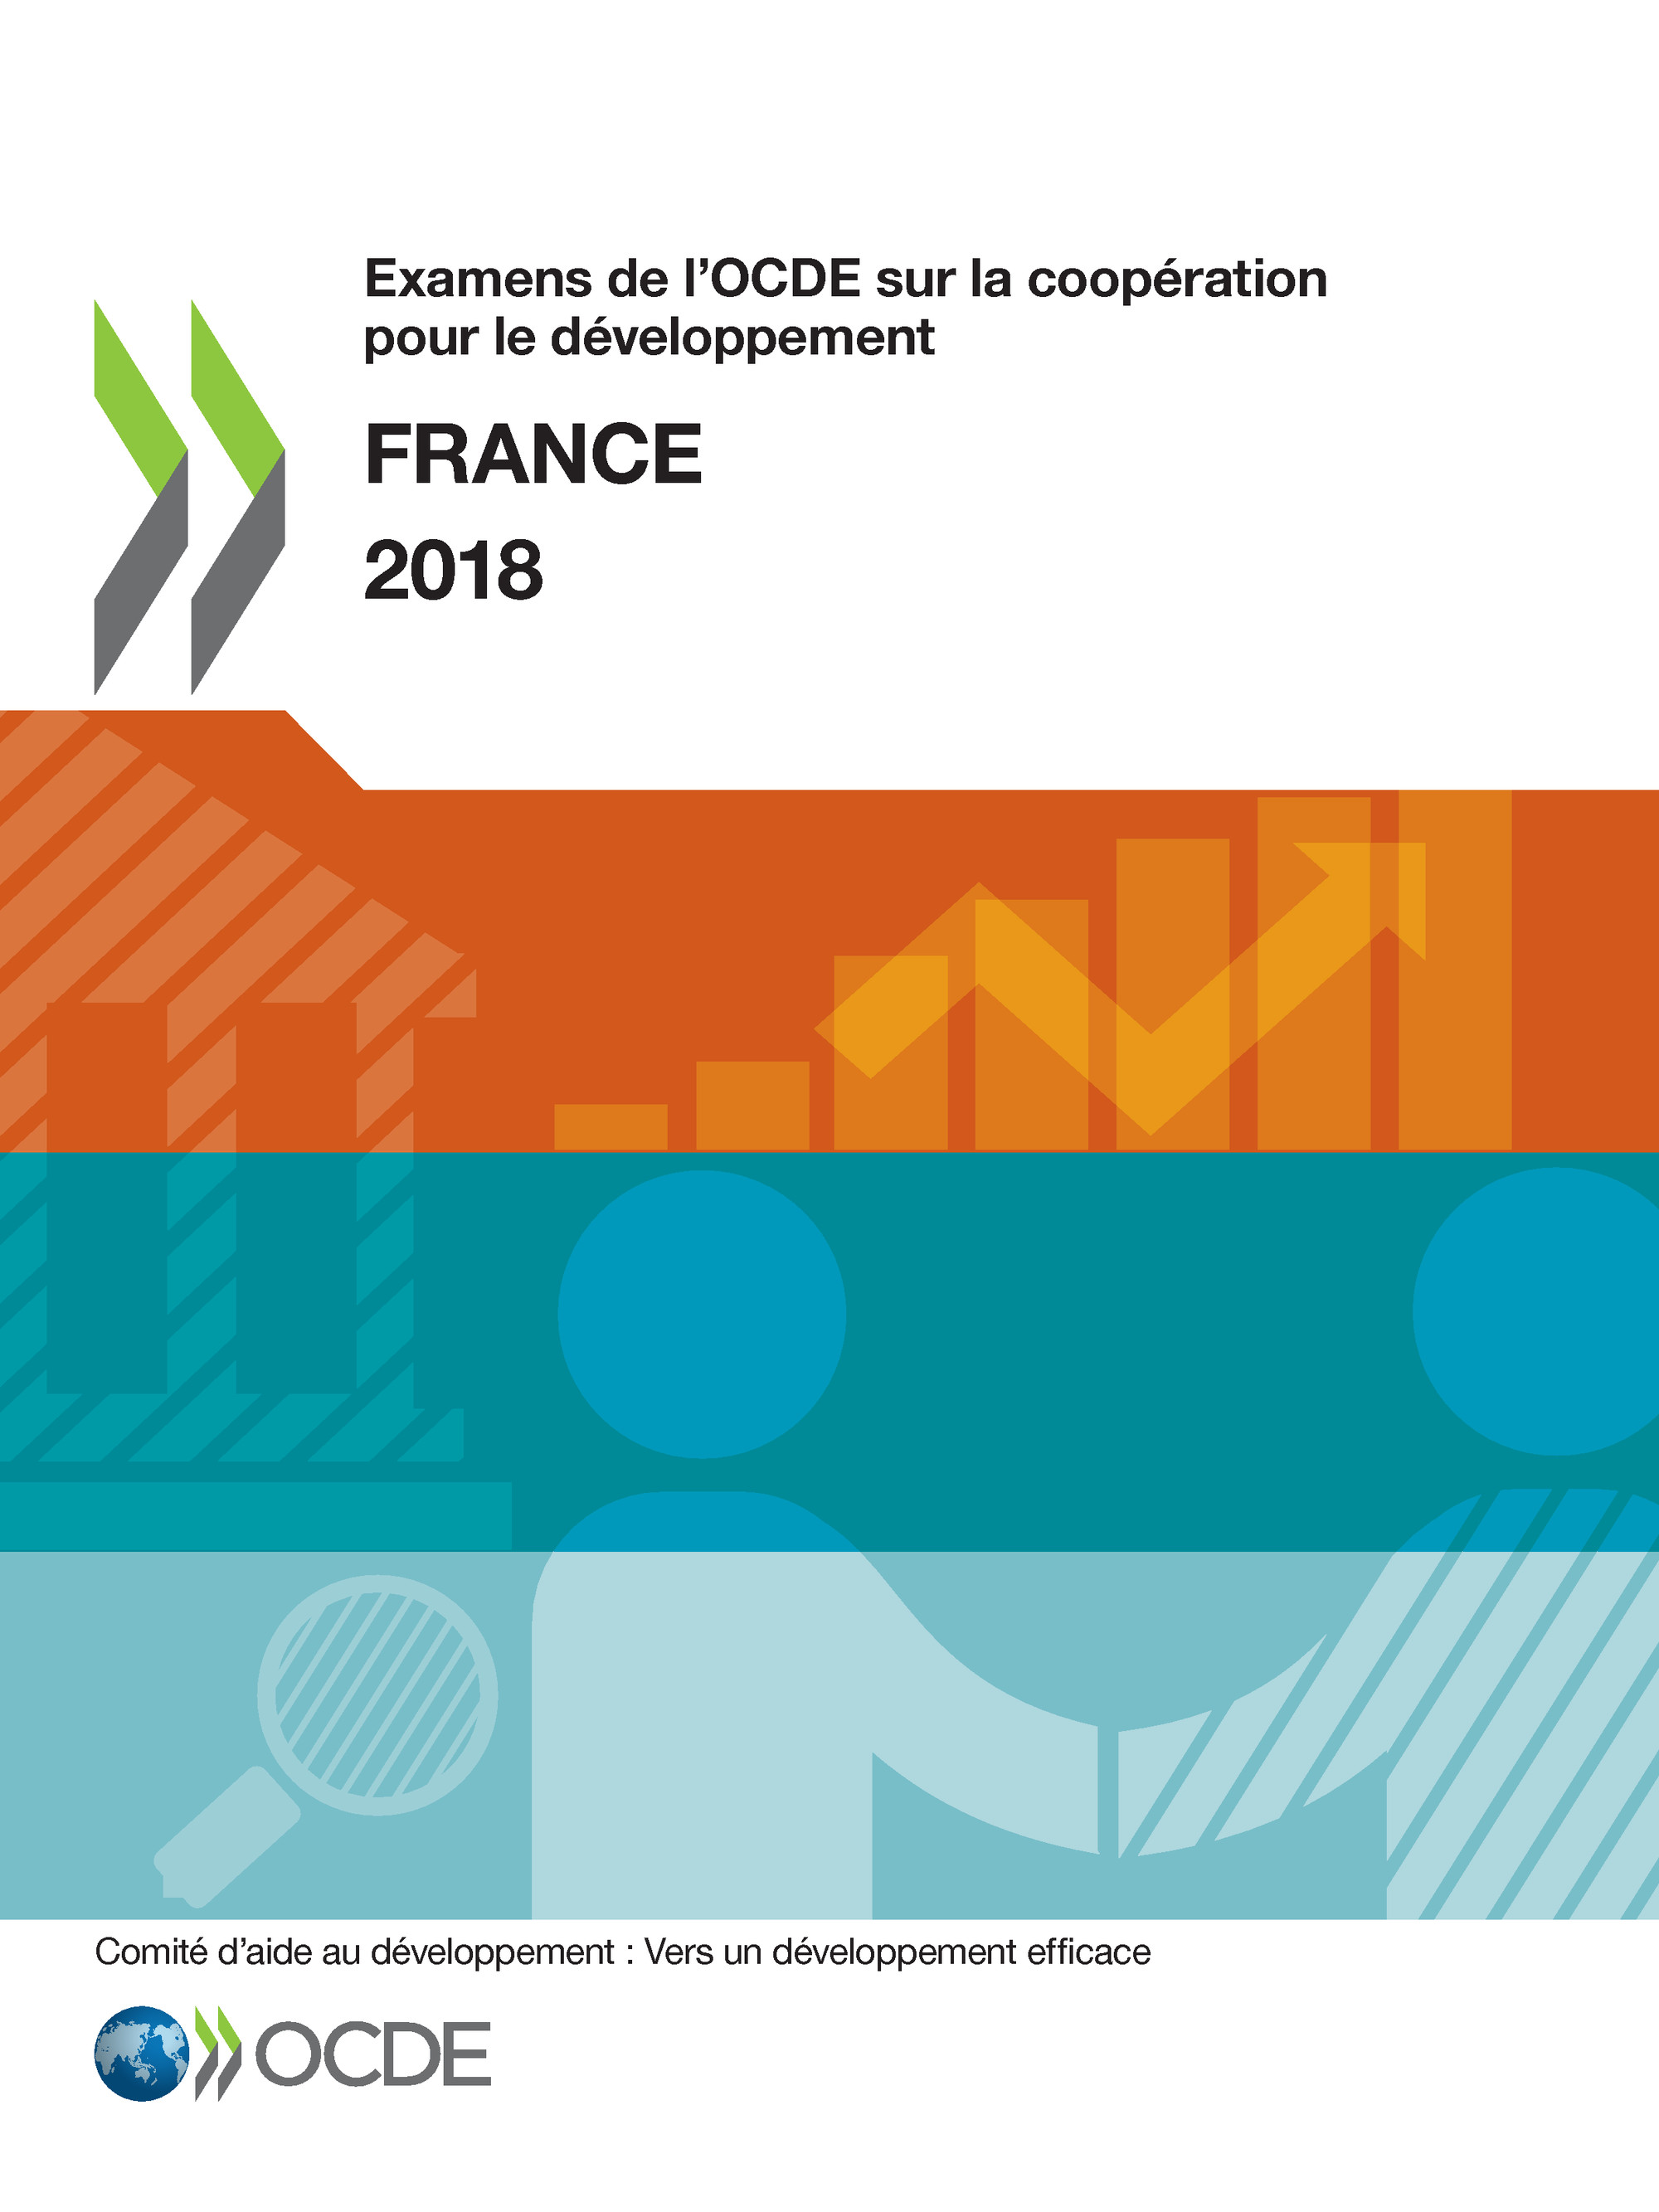 Examens de l'OCDE sur la coopération pour le développement : France 2018 -  Collectif - OCDE / OECD